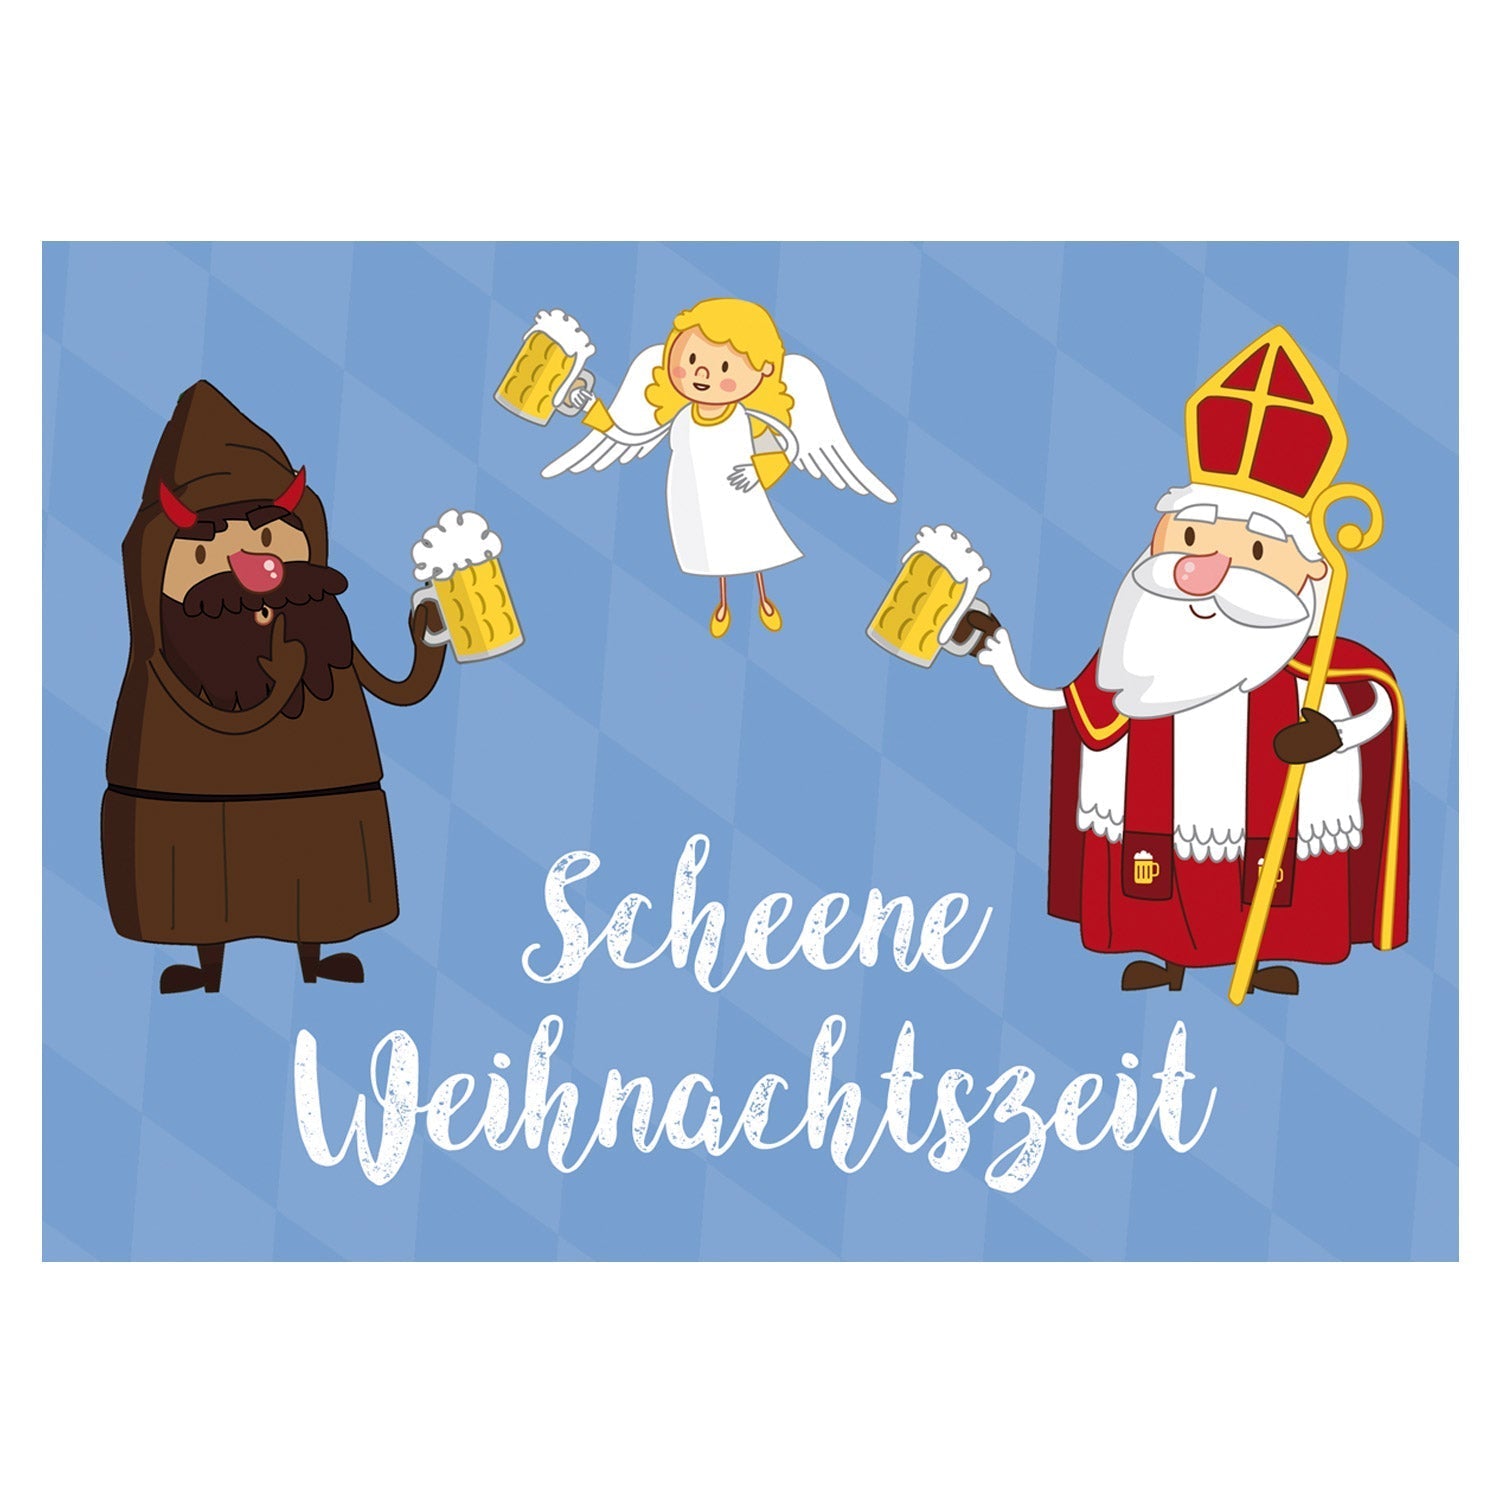 Weihnachts-Grußkarte "Scheene Weihnachtszeit" - bavariashop - mei LebensGfui